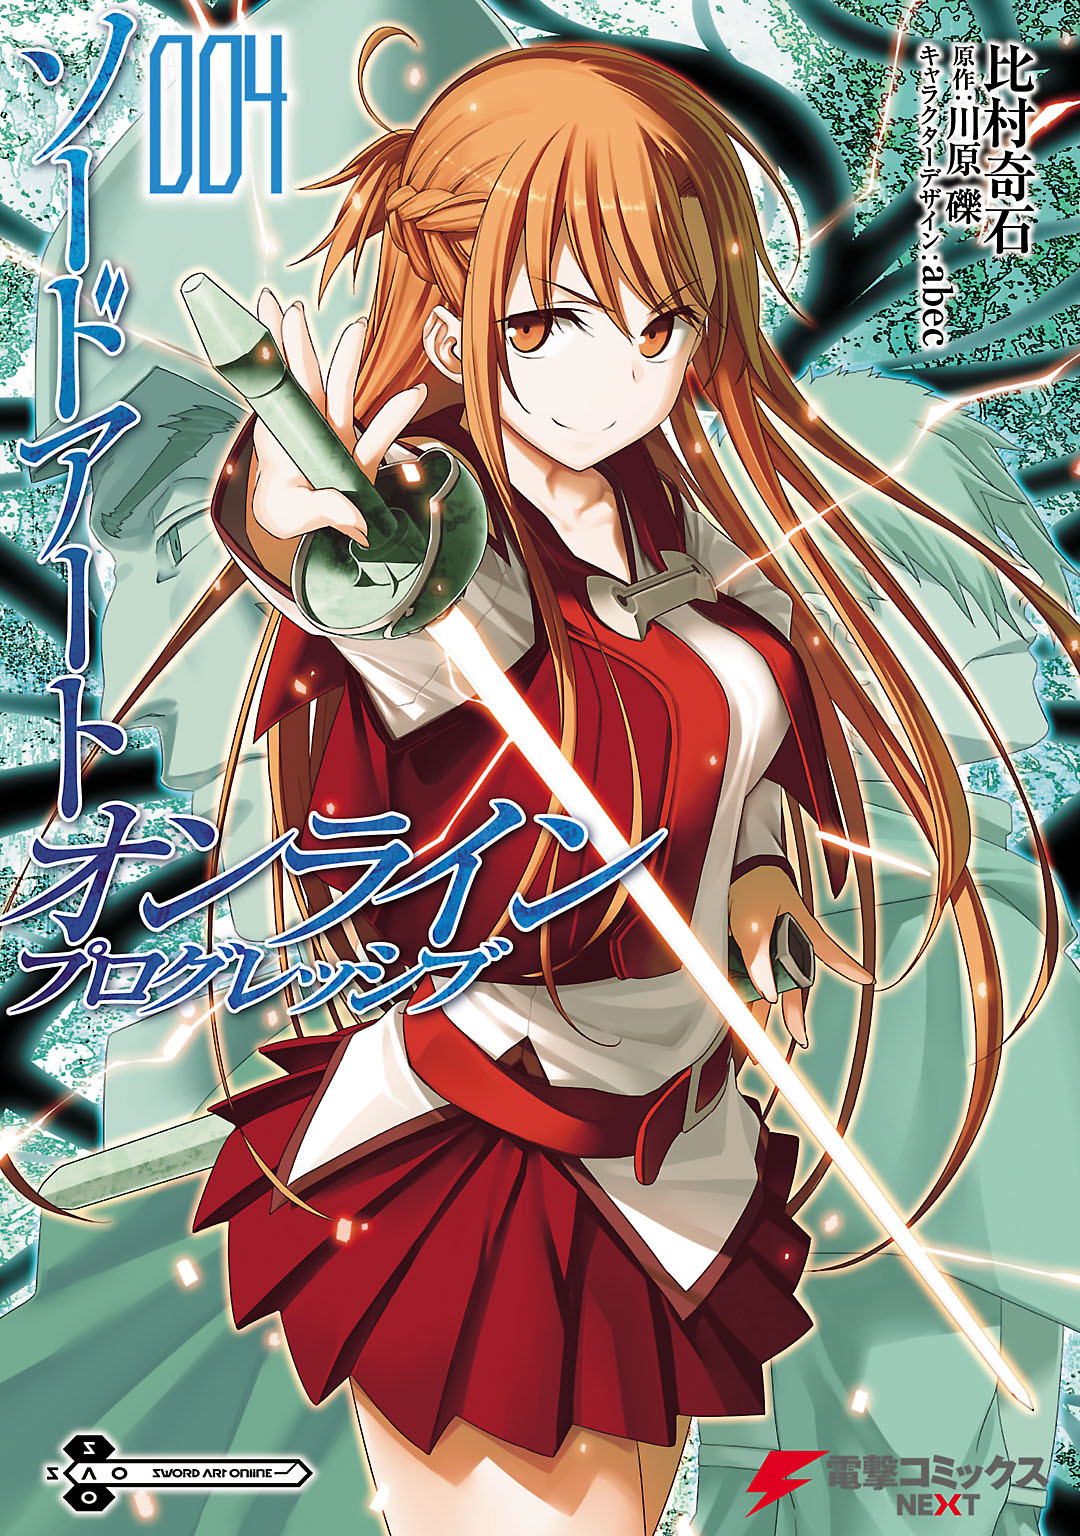 Sword Art Online Progressive Scherzo of Deep Night Manga Volume 1